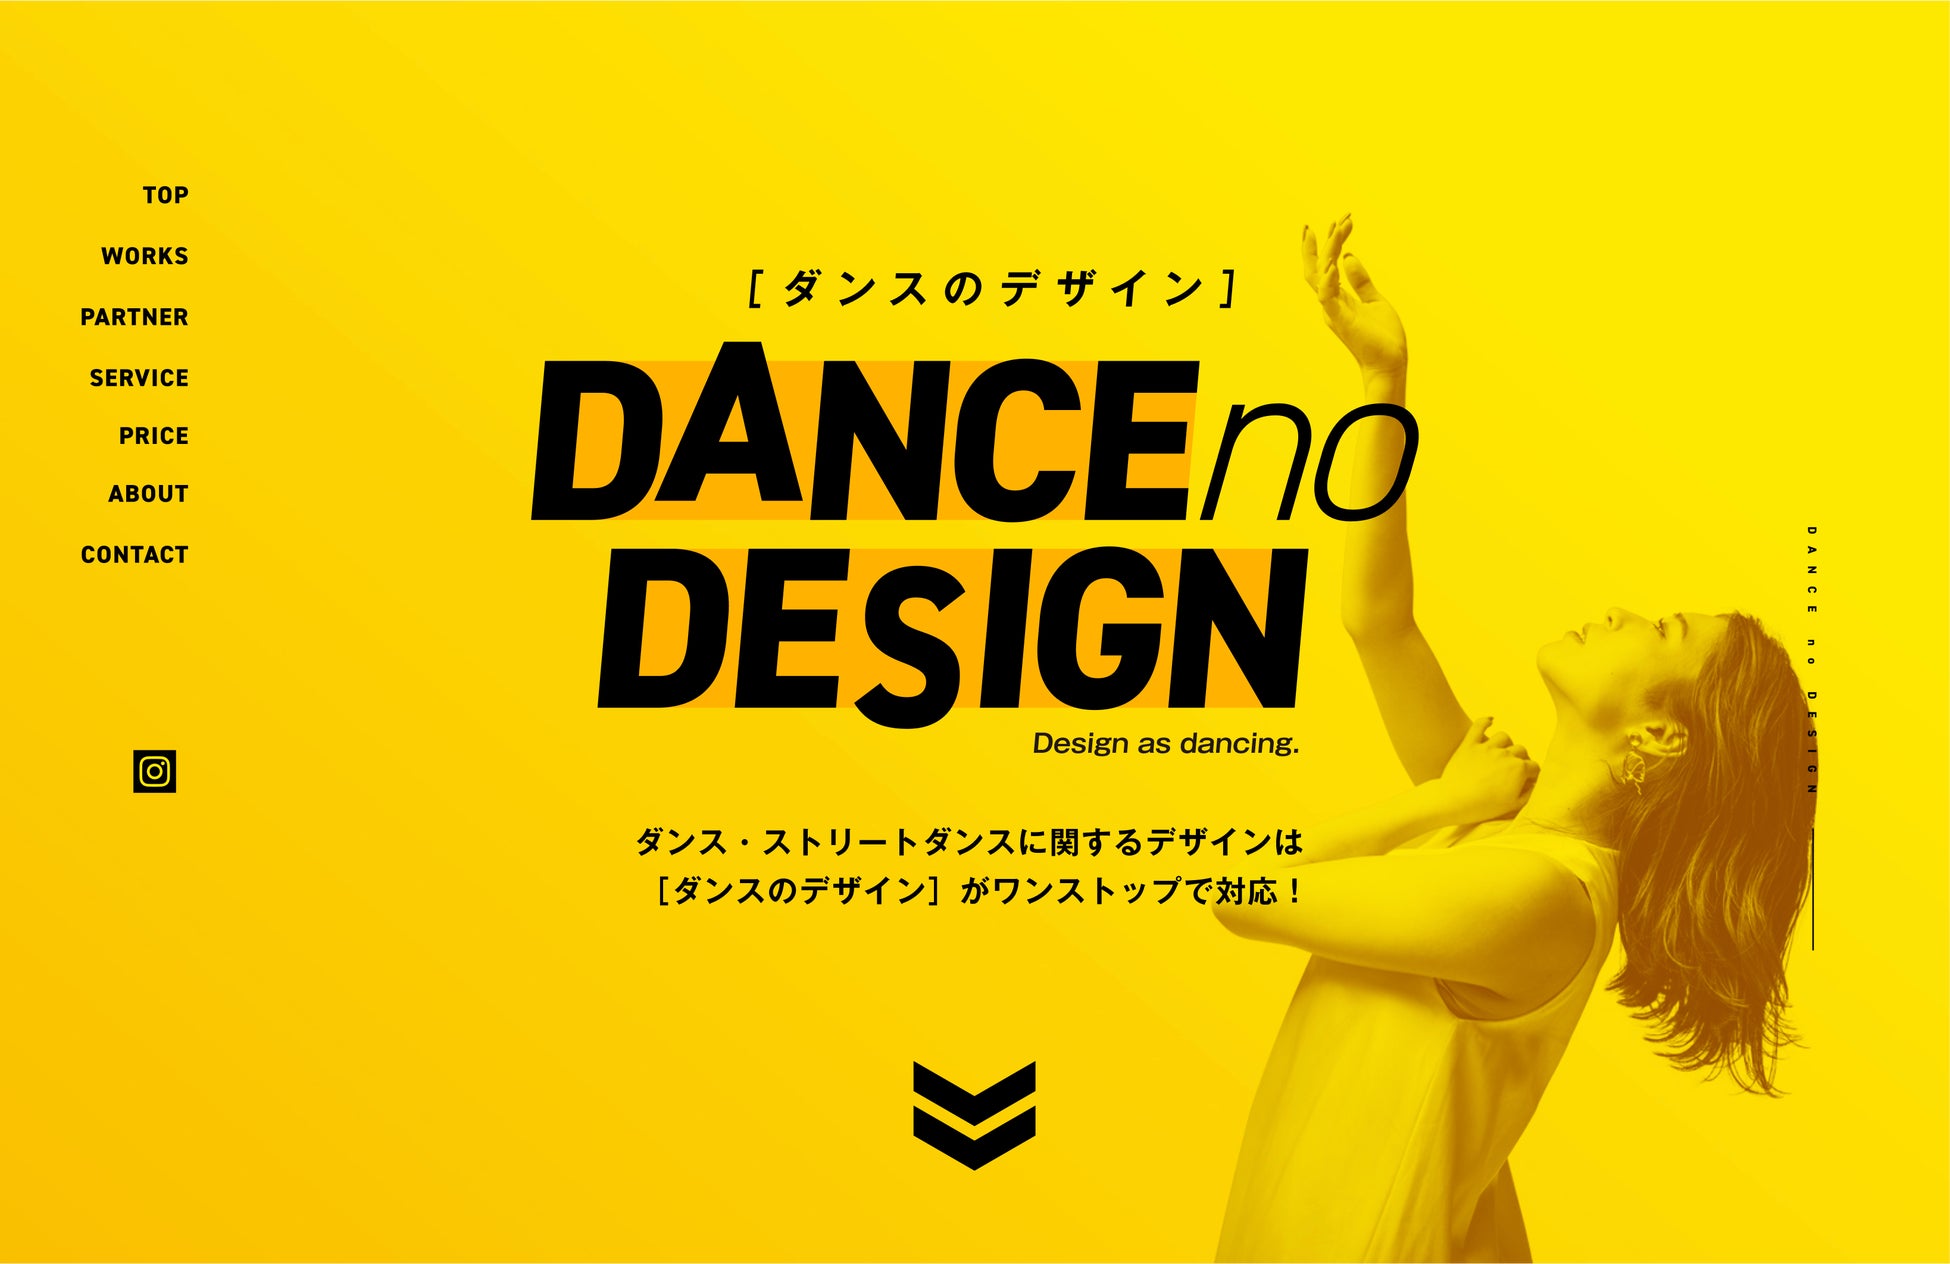 ダンス・ストリートダンス特化のデザインサービス「ダンスのデザイン」開始！